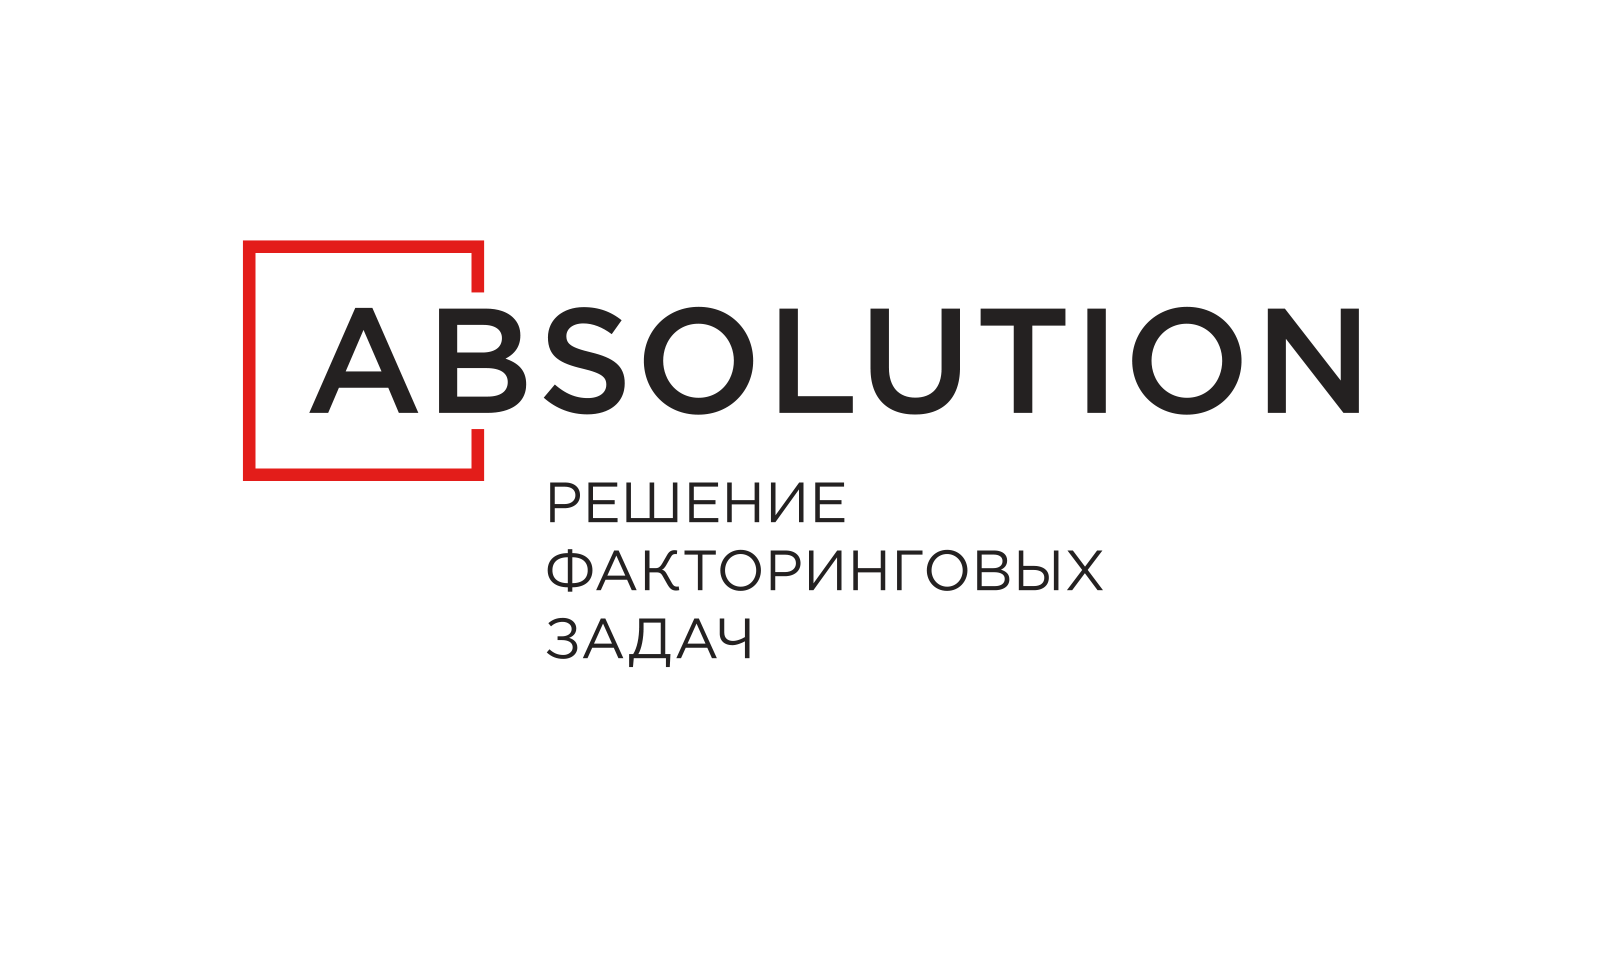 Факторинг москва. Логотип Absolution. Факторинговые компании логотипы. Факторинговые компании Москва. Absolution факторинг.